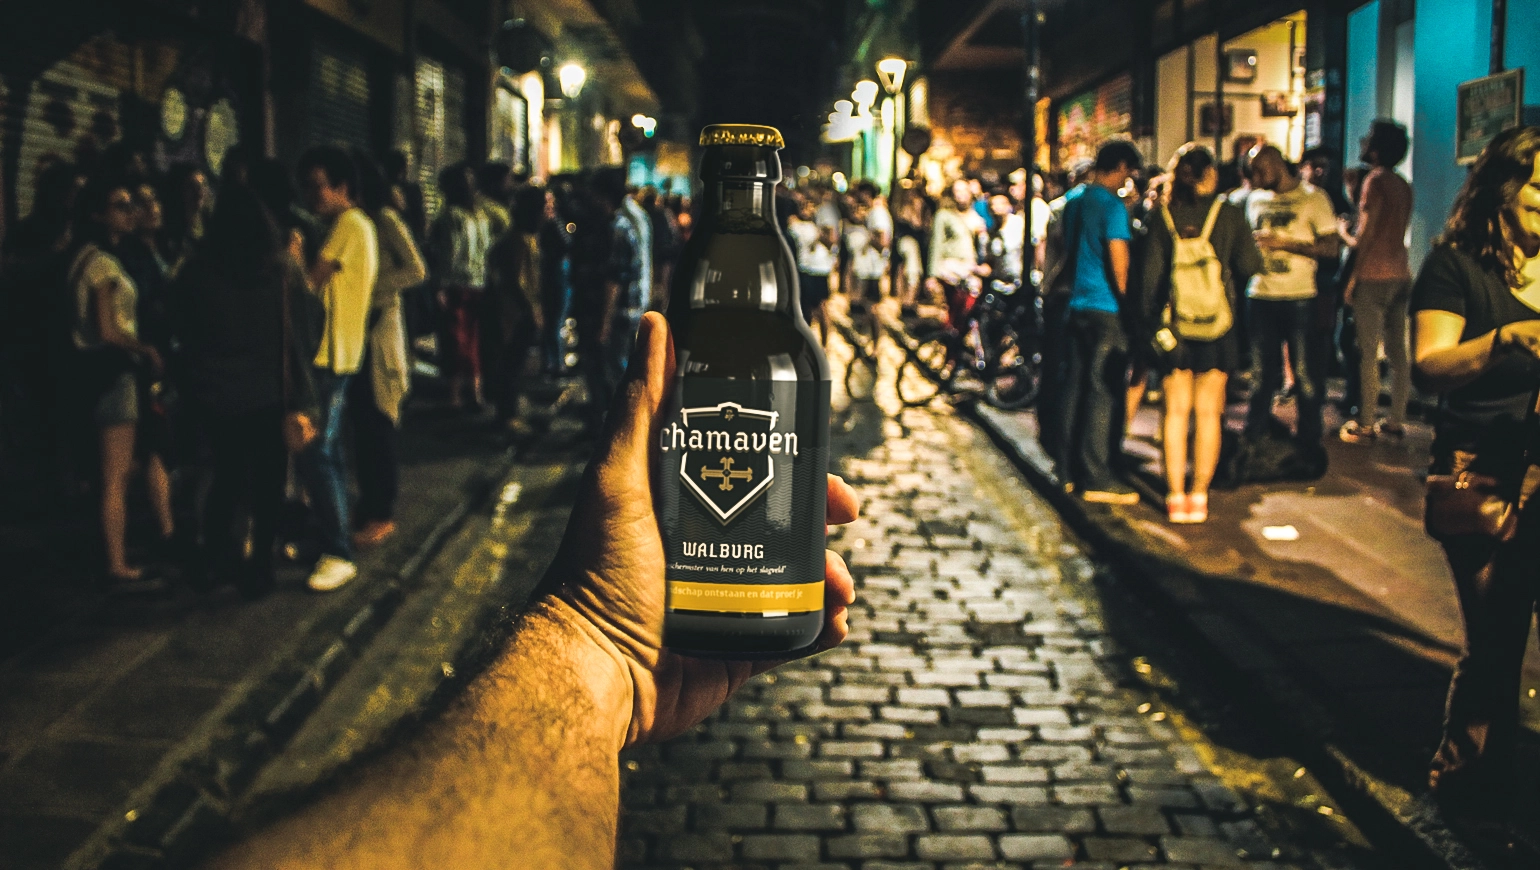 Hand die een Chamavan Walburg biertje vasthoudt met op de achtergrond een straat vol met mensen